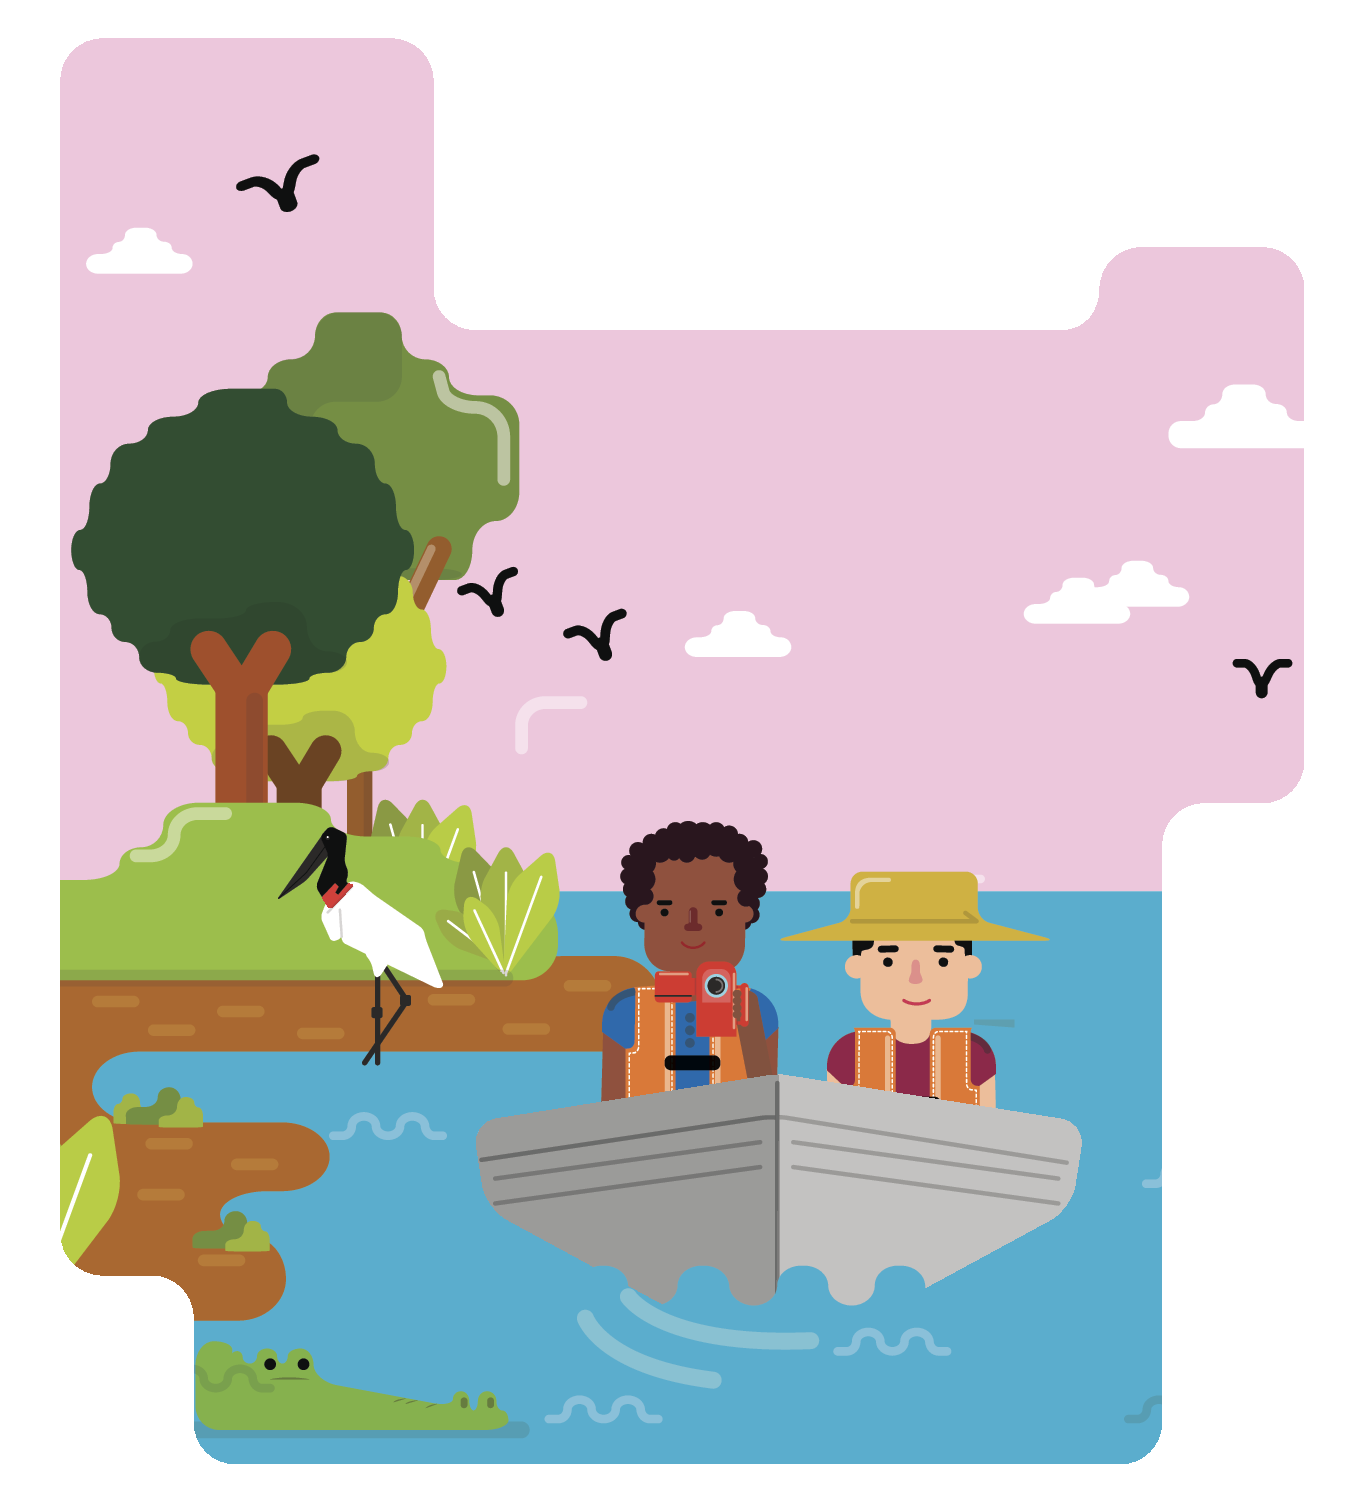 Ilustração. Dois homens navegando em um barco. Na margem há uma ave, arbustos e árvores. Há pássaros voando no céu.